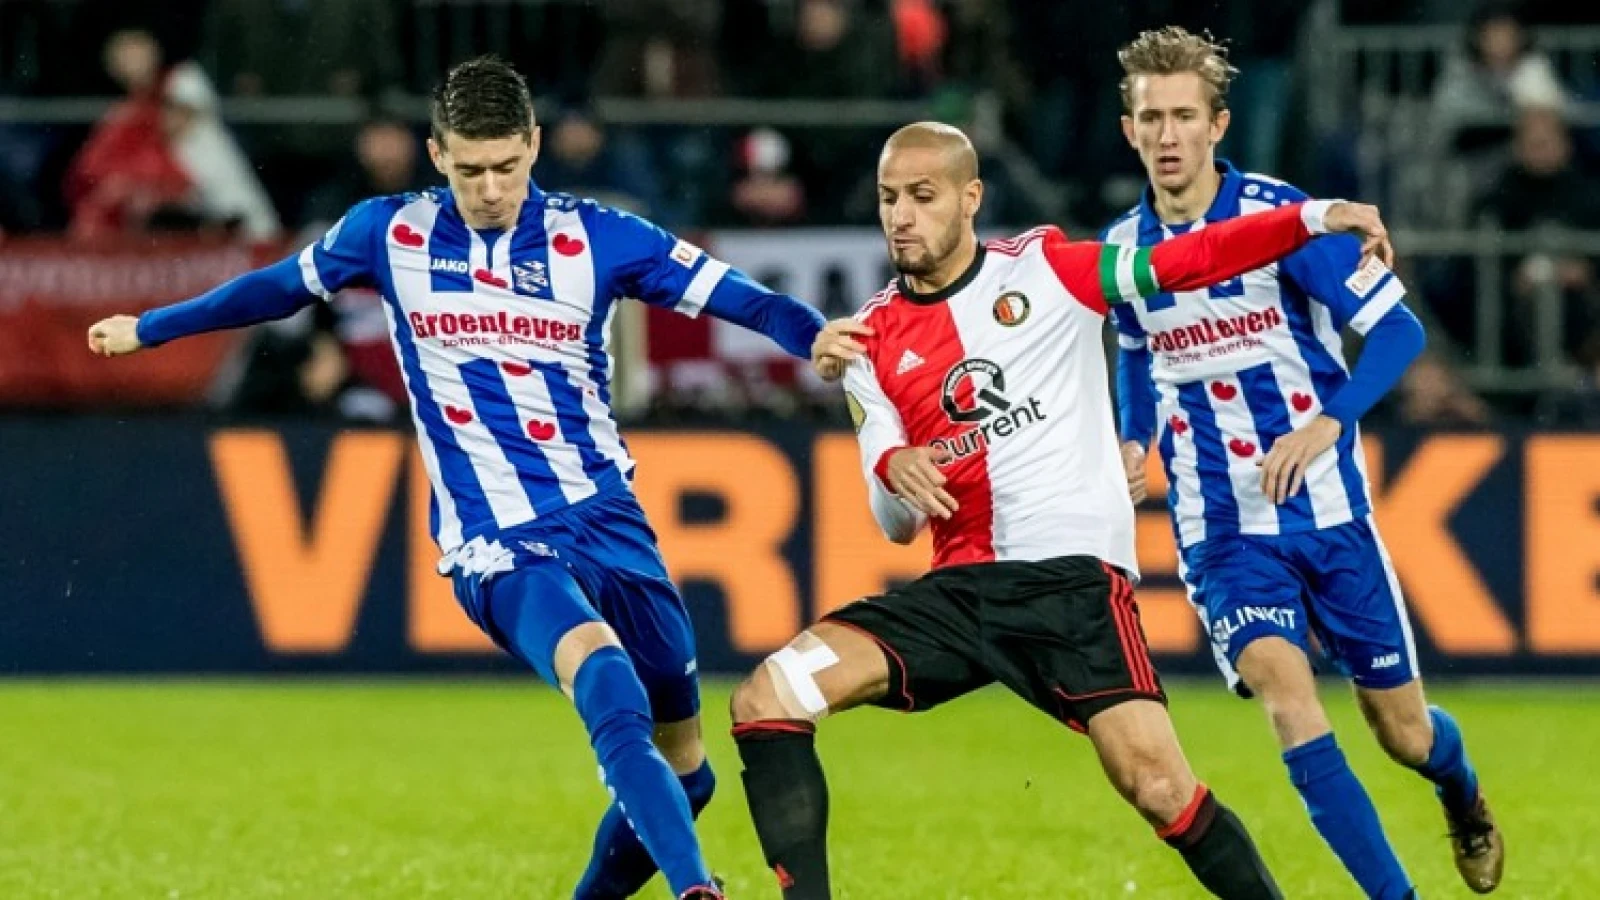 LIVE | Feyenoord - sc Heerenveen 1-1 | Einde wedstrijd